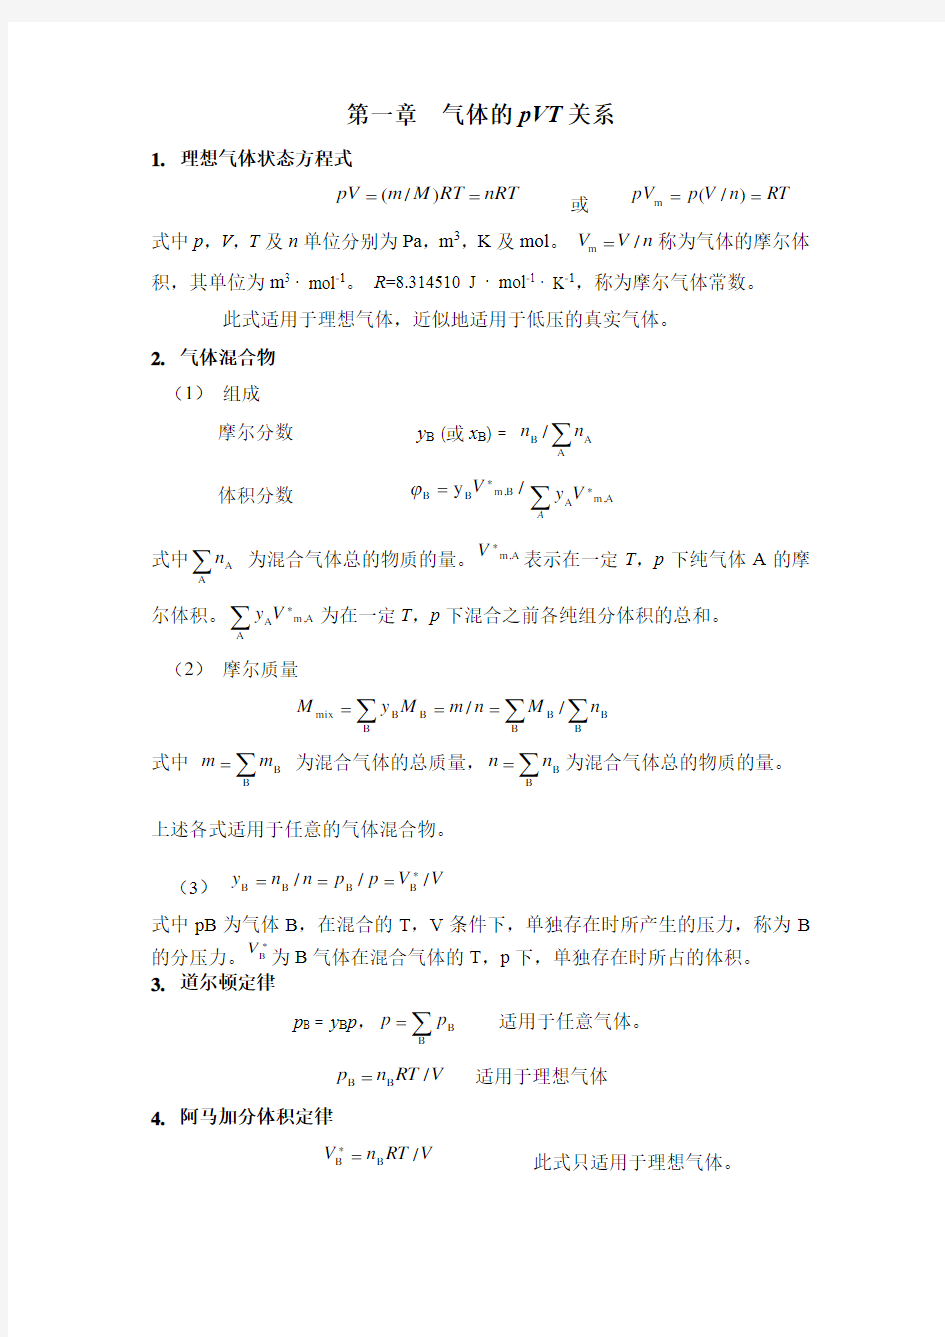 南京大学物化上册主要公式及使用条件